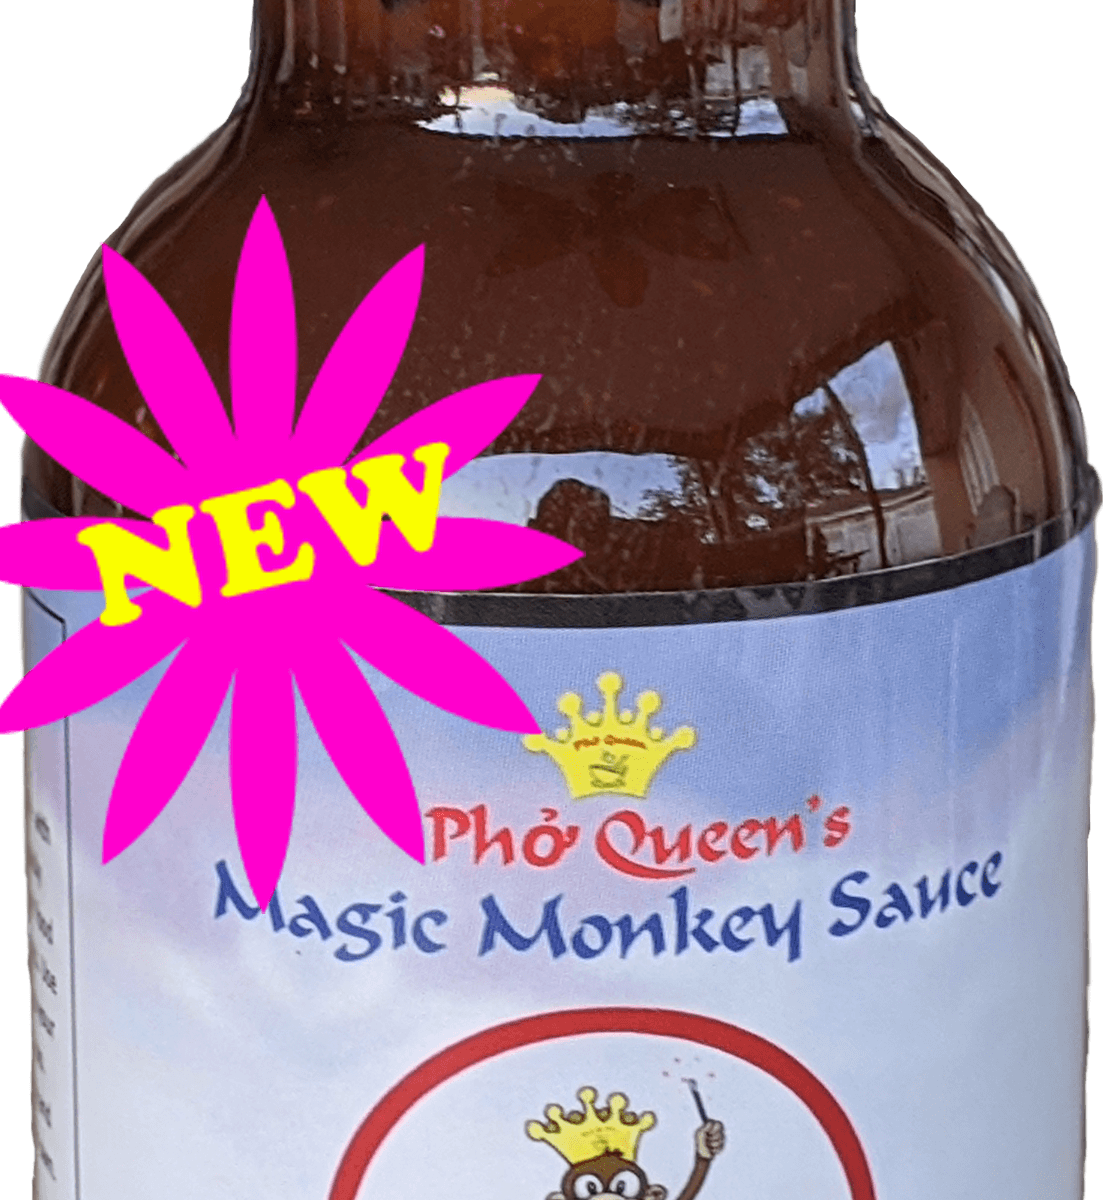 monkey sauce-10oz new